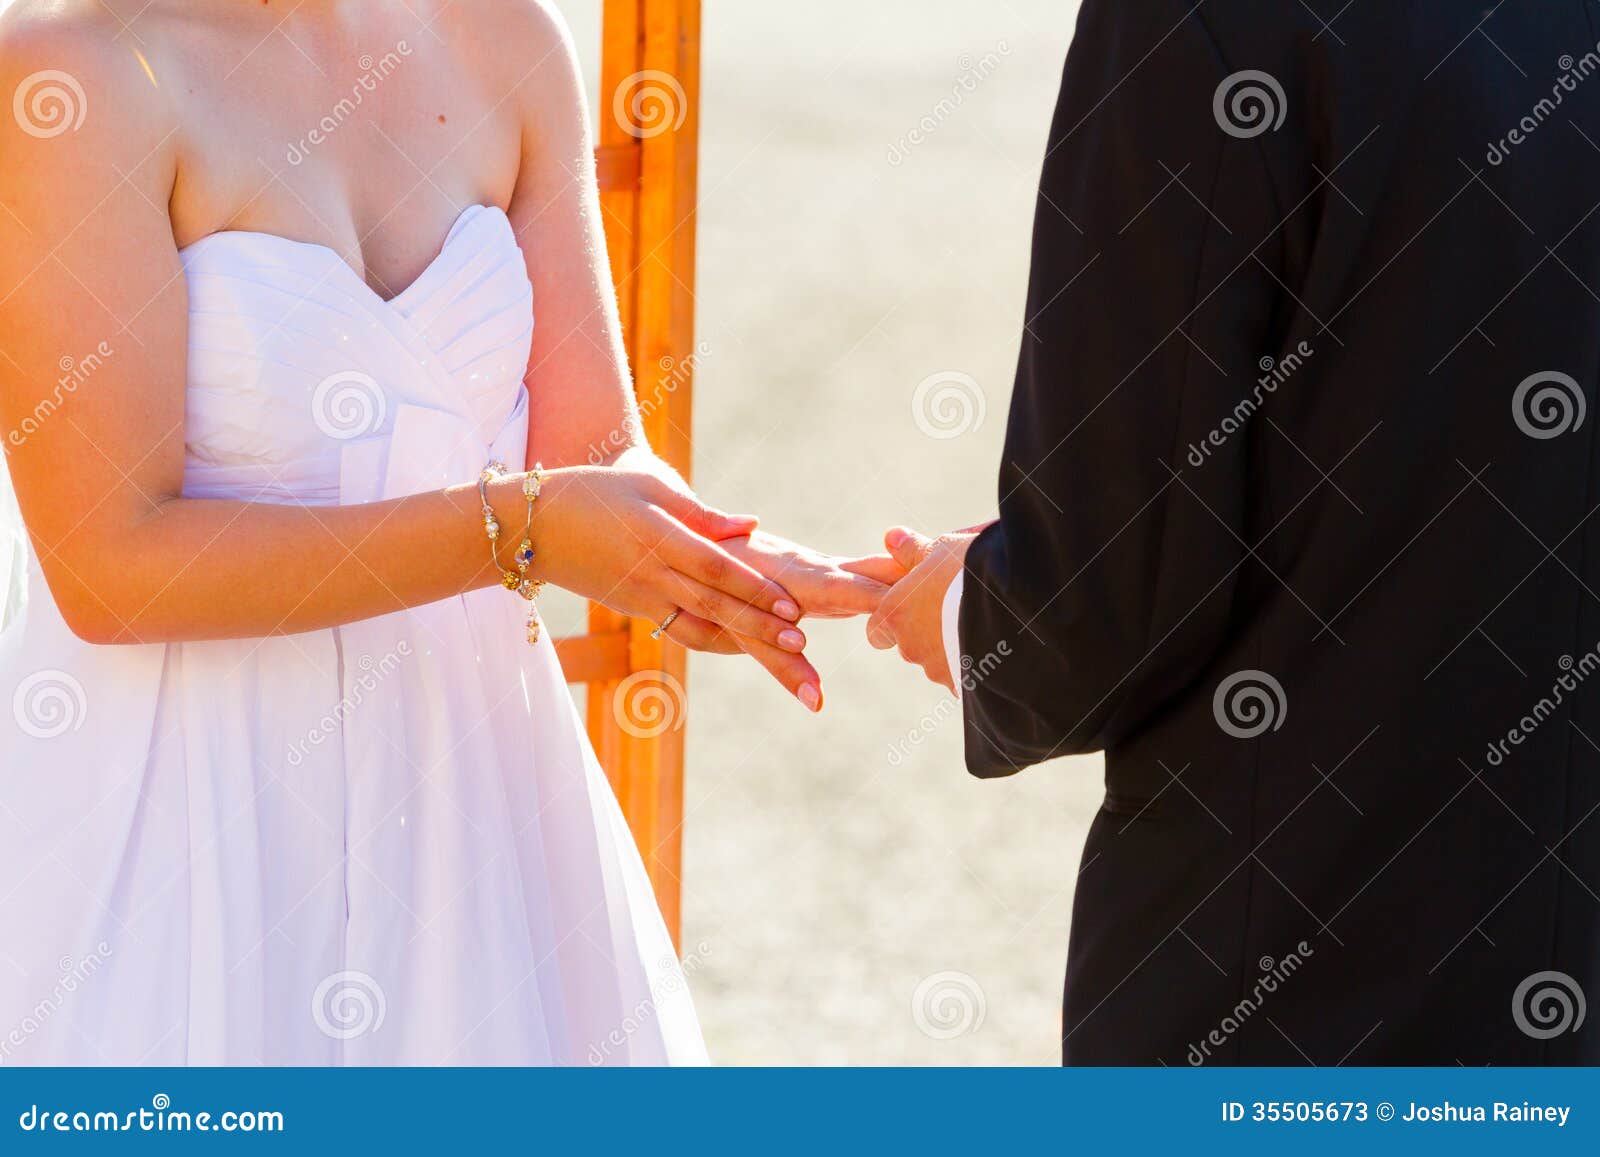 Rating Tags Marriage Bride Bride 34